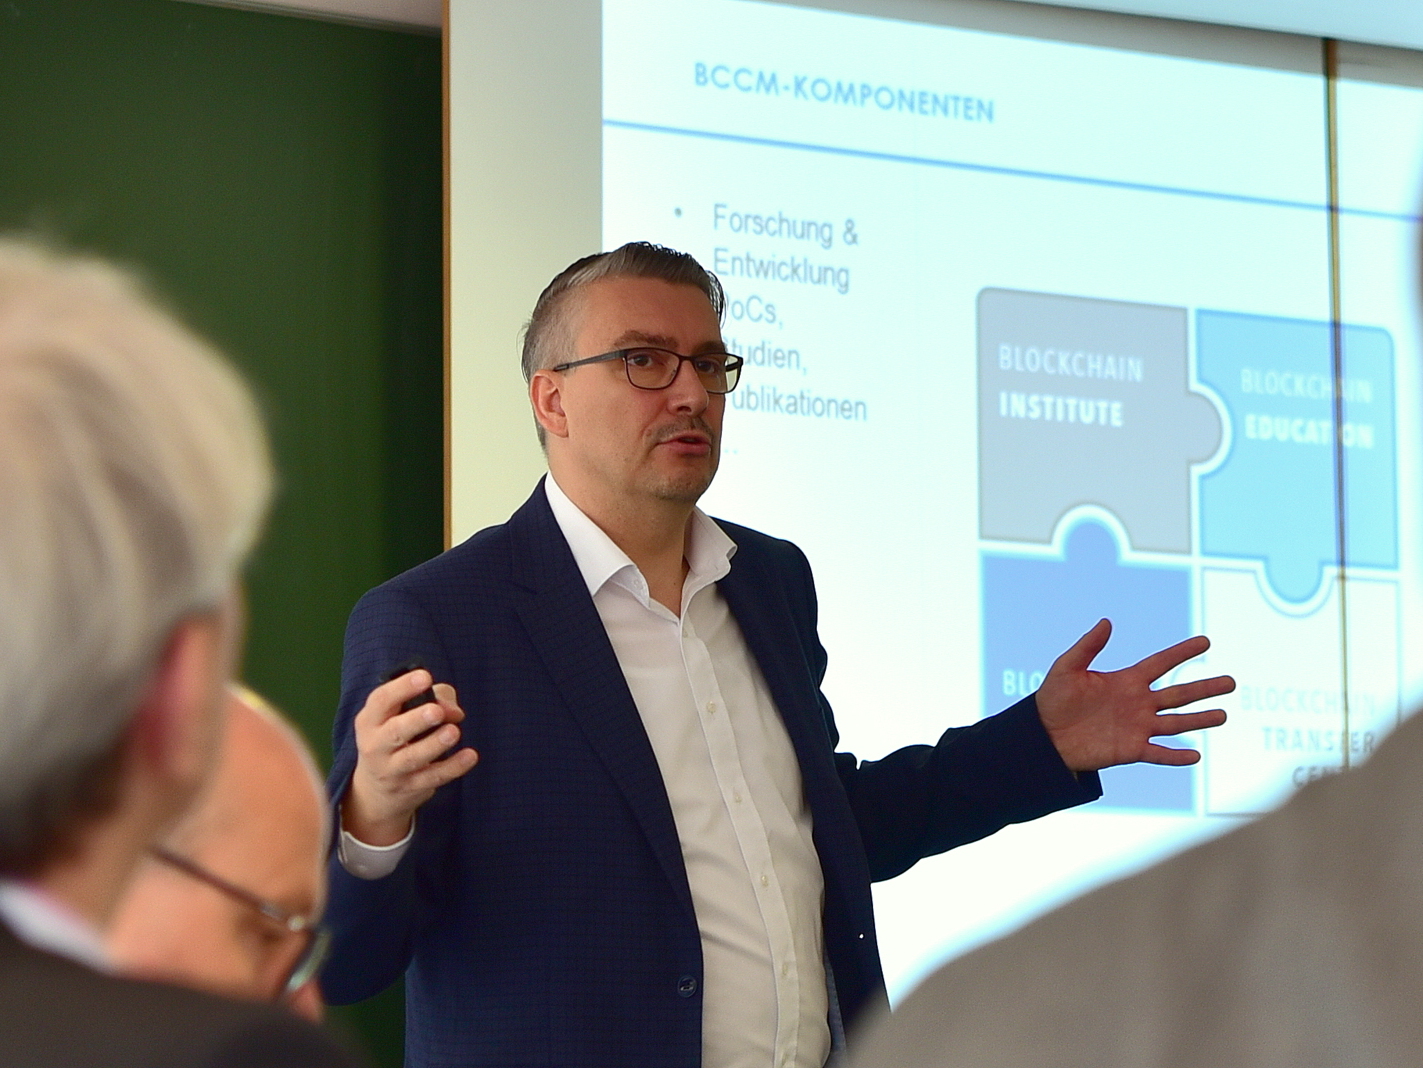 Professor Andreas Ittner, Leiter des BCCM, referiert zu Anwendungsfeldern der Blockchain-Technologie.